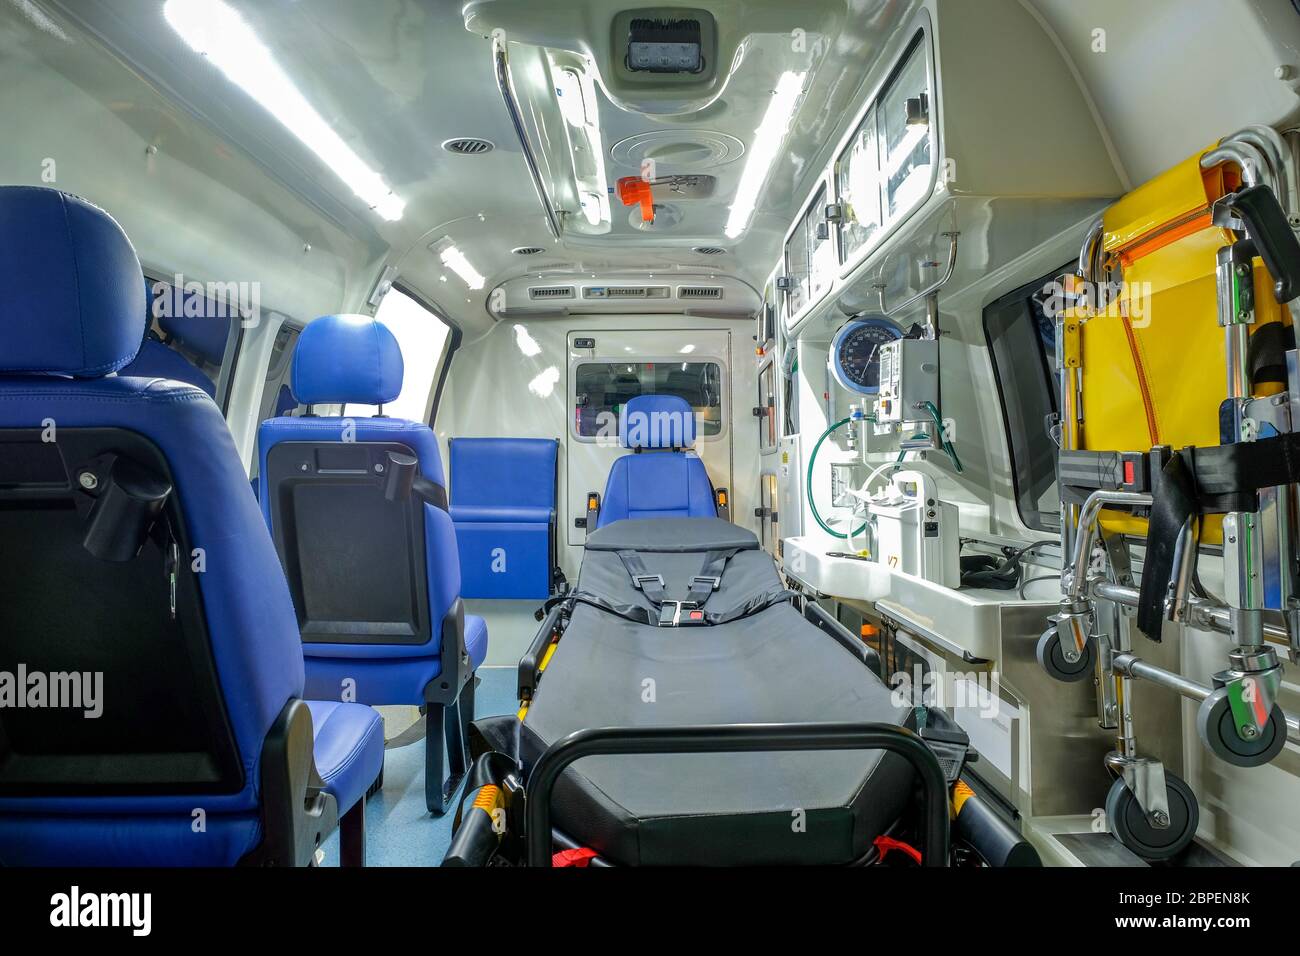 À l'intérieur d'une ambulance avec du matériel médical pour aider les patients avant l'accouchement à l'hôpital. Banque D'Images